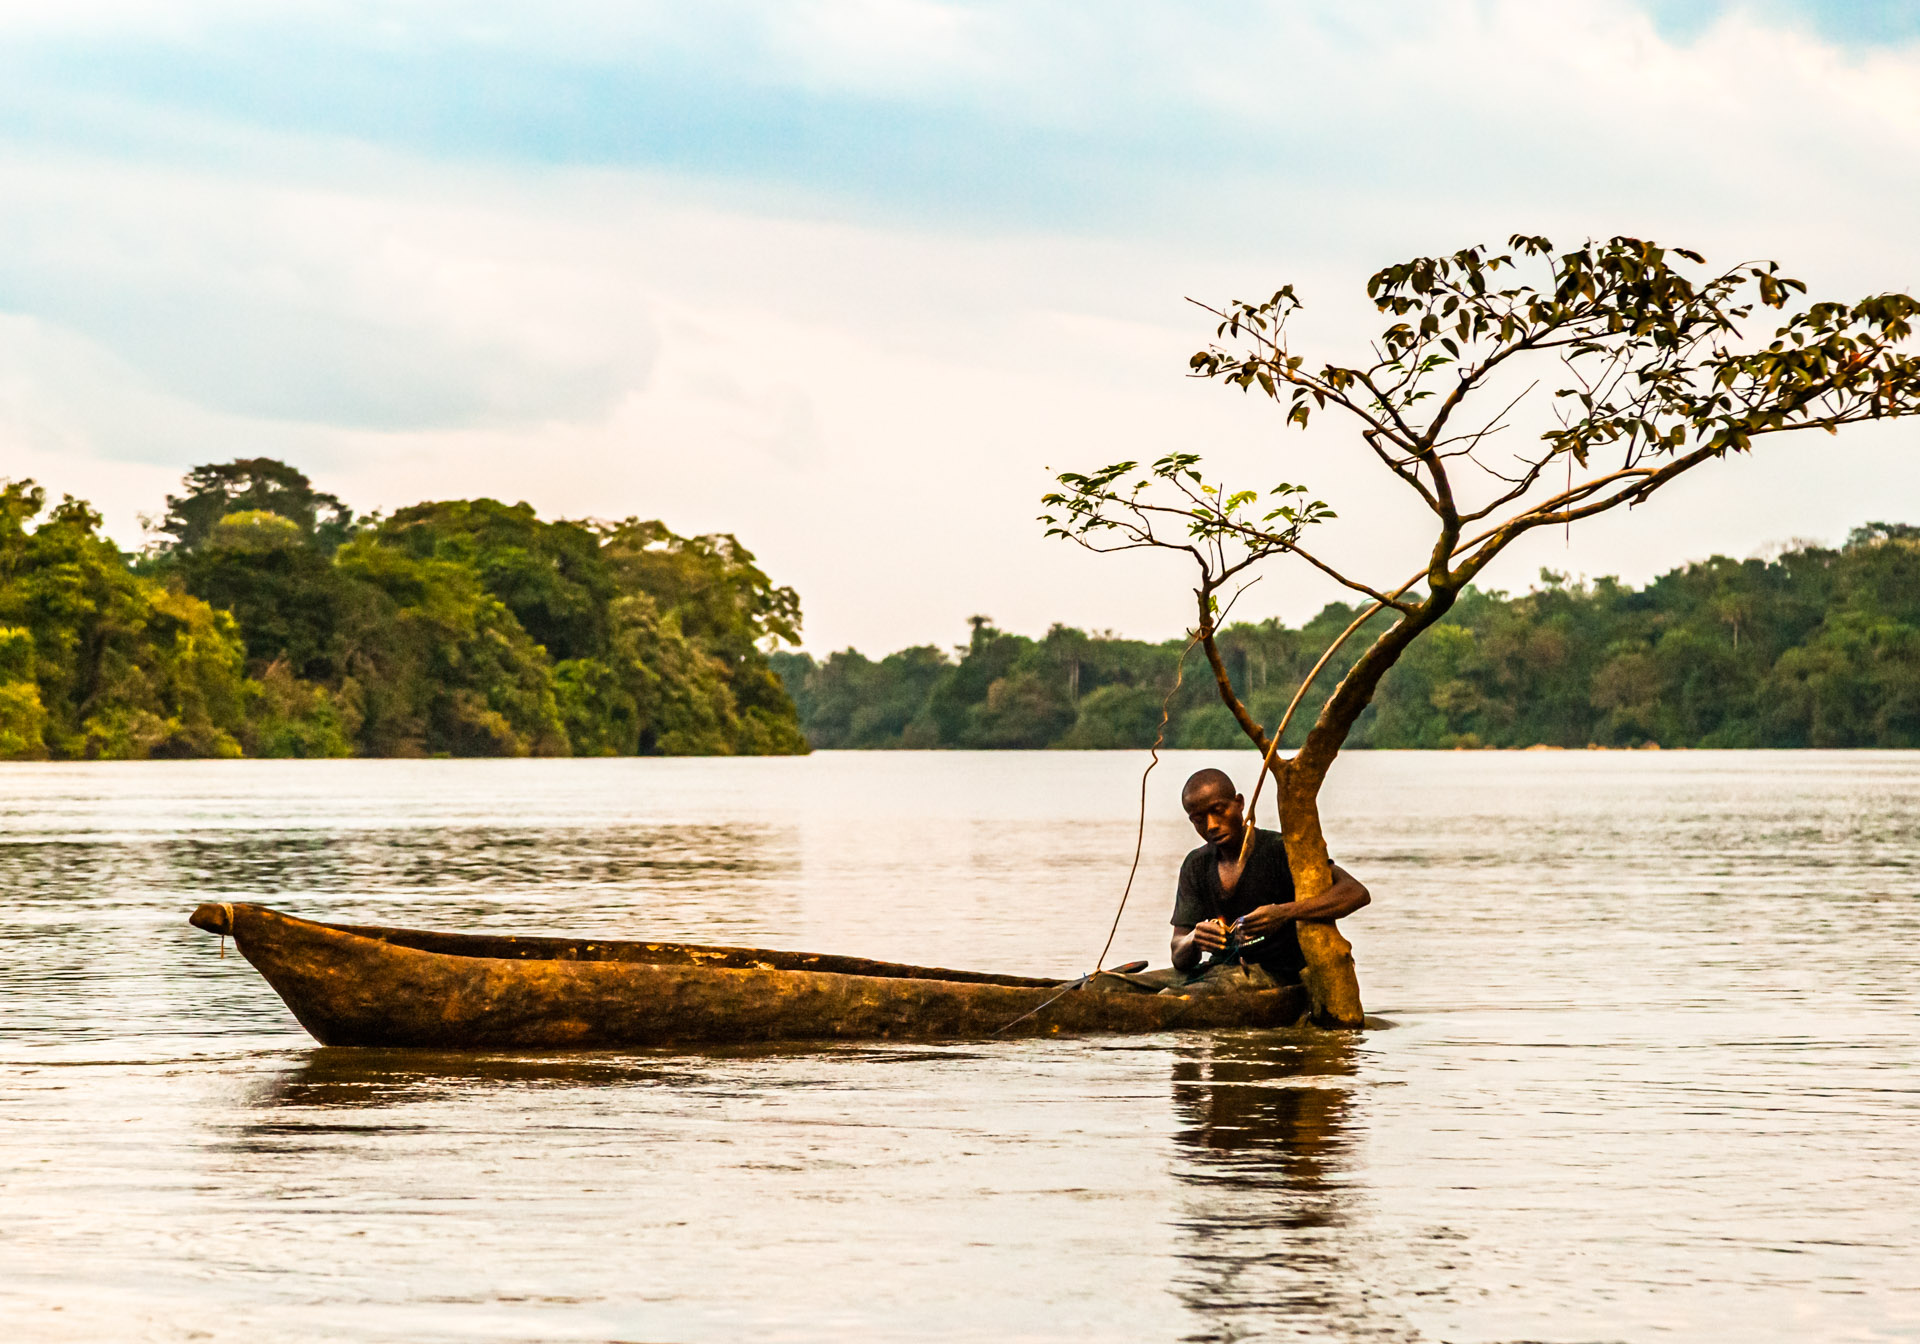 Fisherman in canoe on Moa River, Sierra Leone